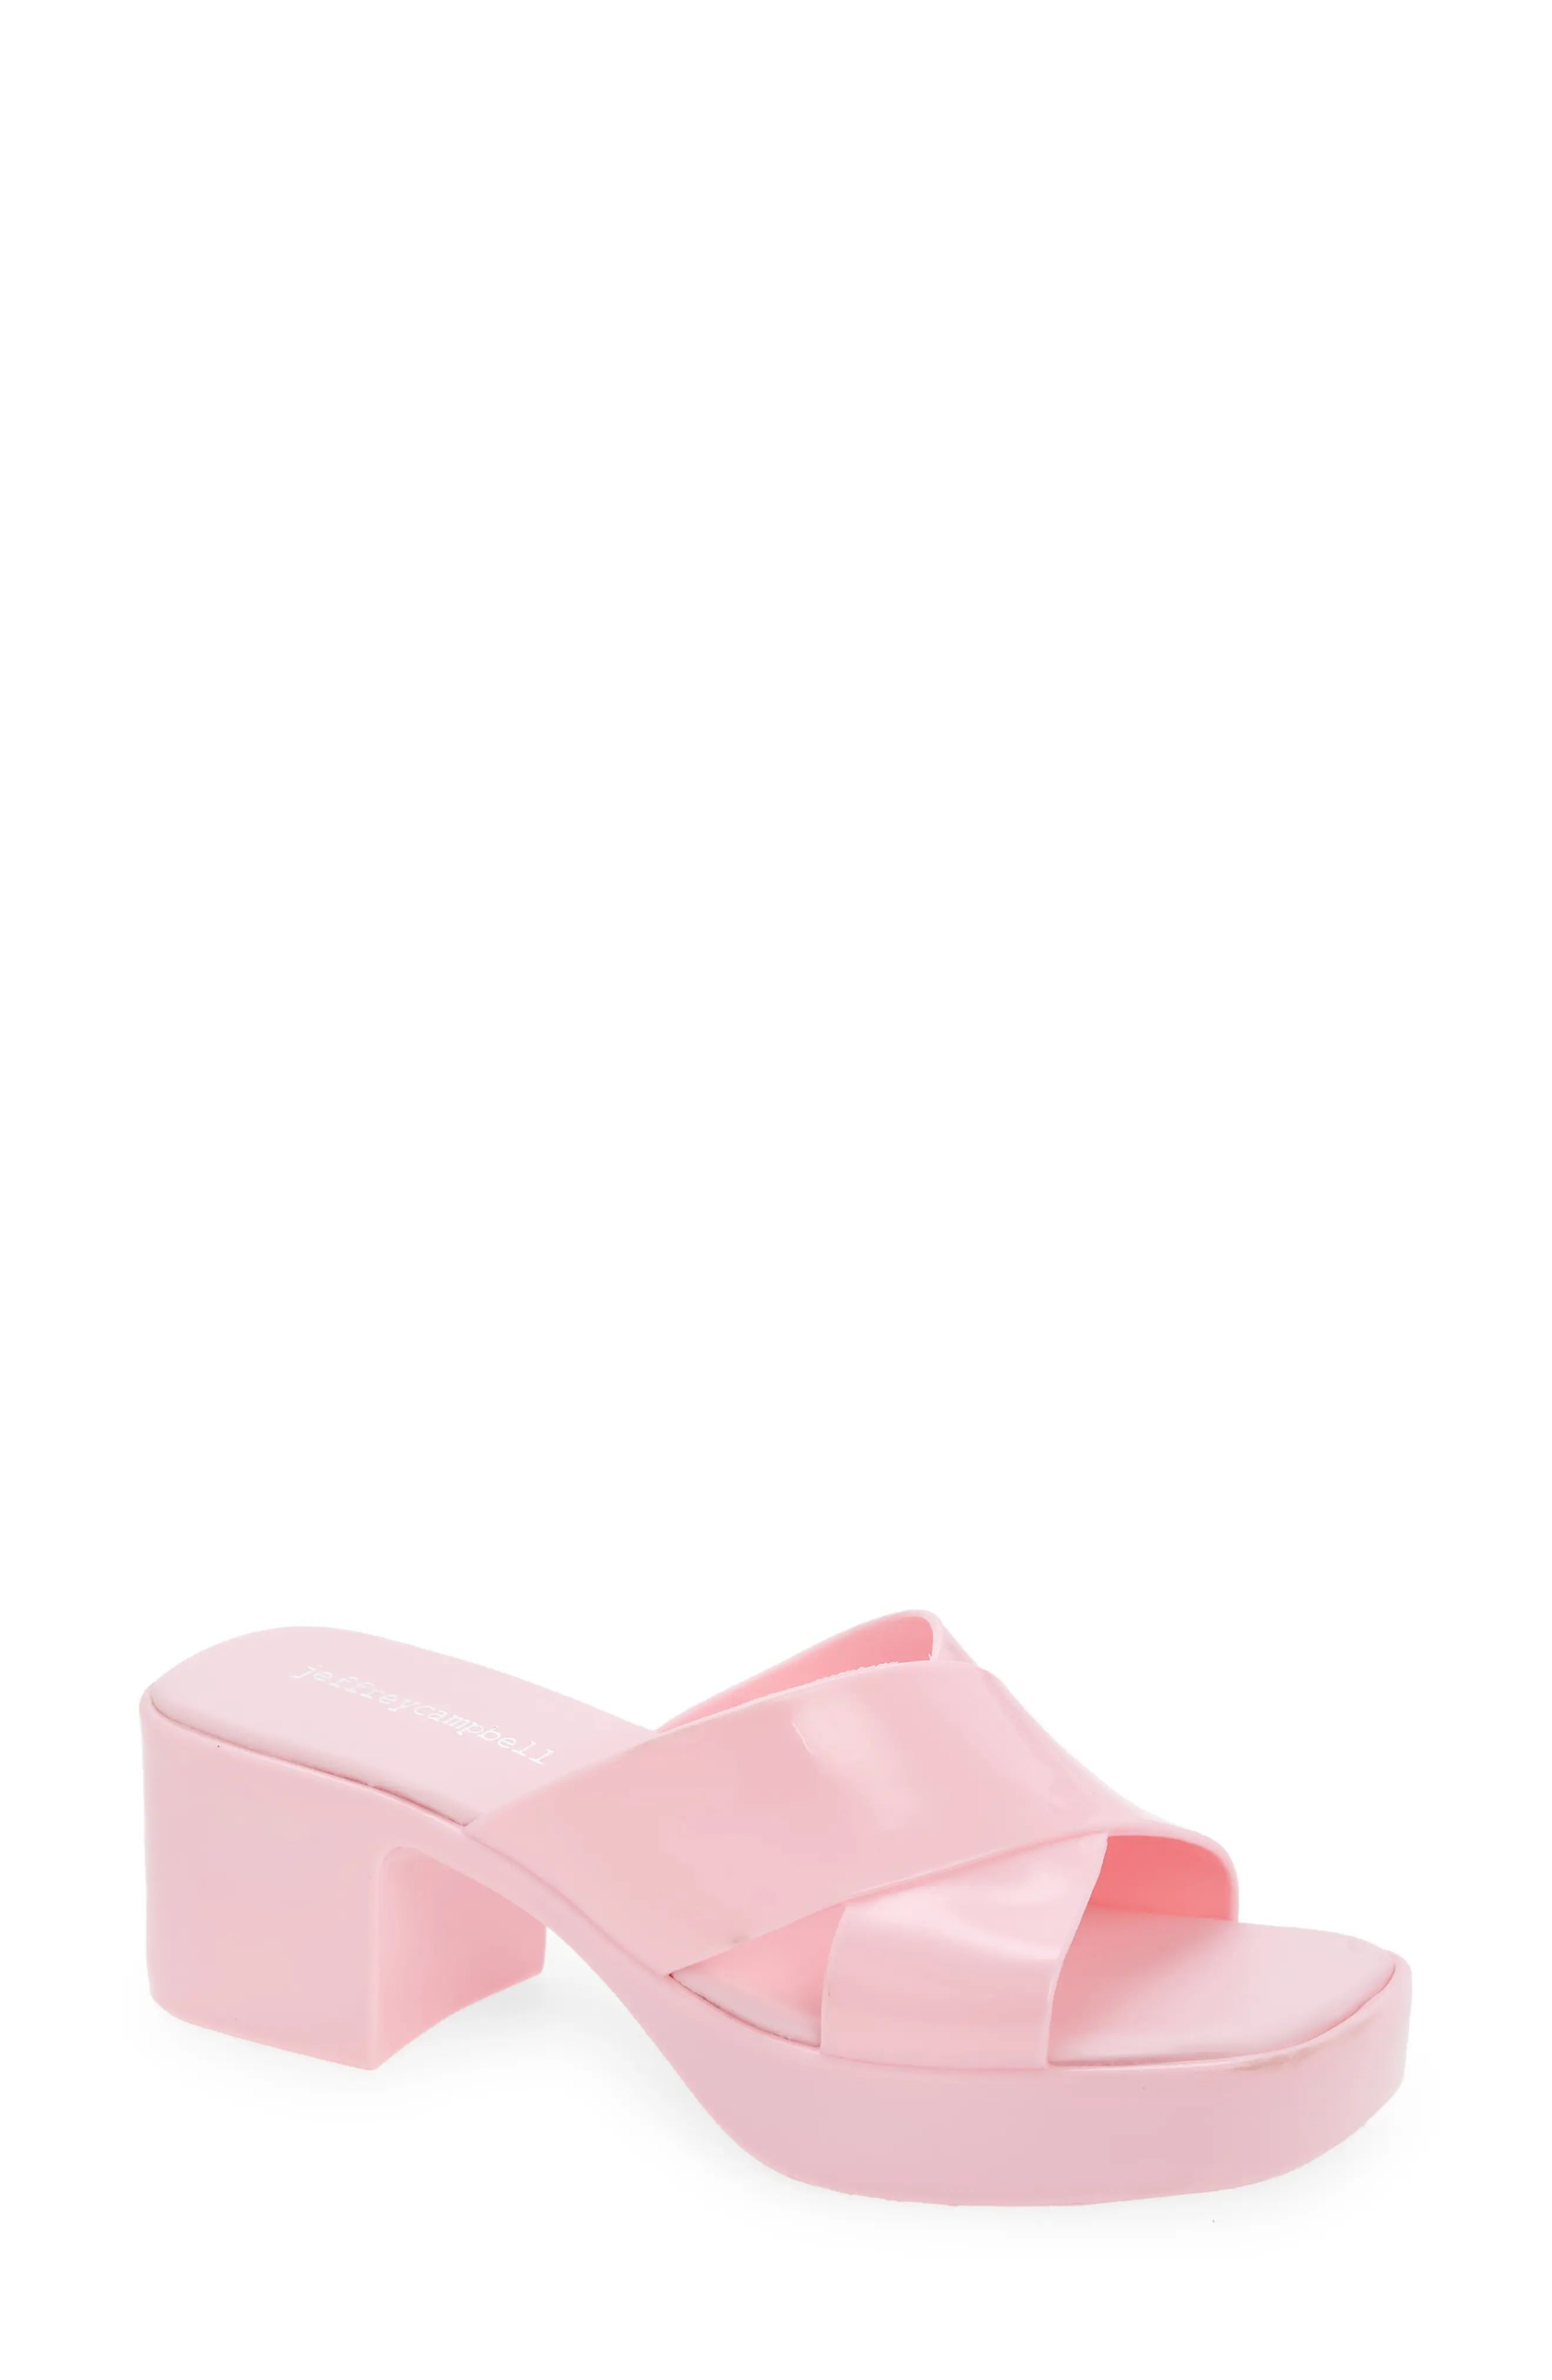 Jeffrey Campbell Bubblegum Platform Sandal in Pink Shiny at Nordstrom, Size 9 | Nordstrom